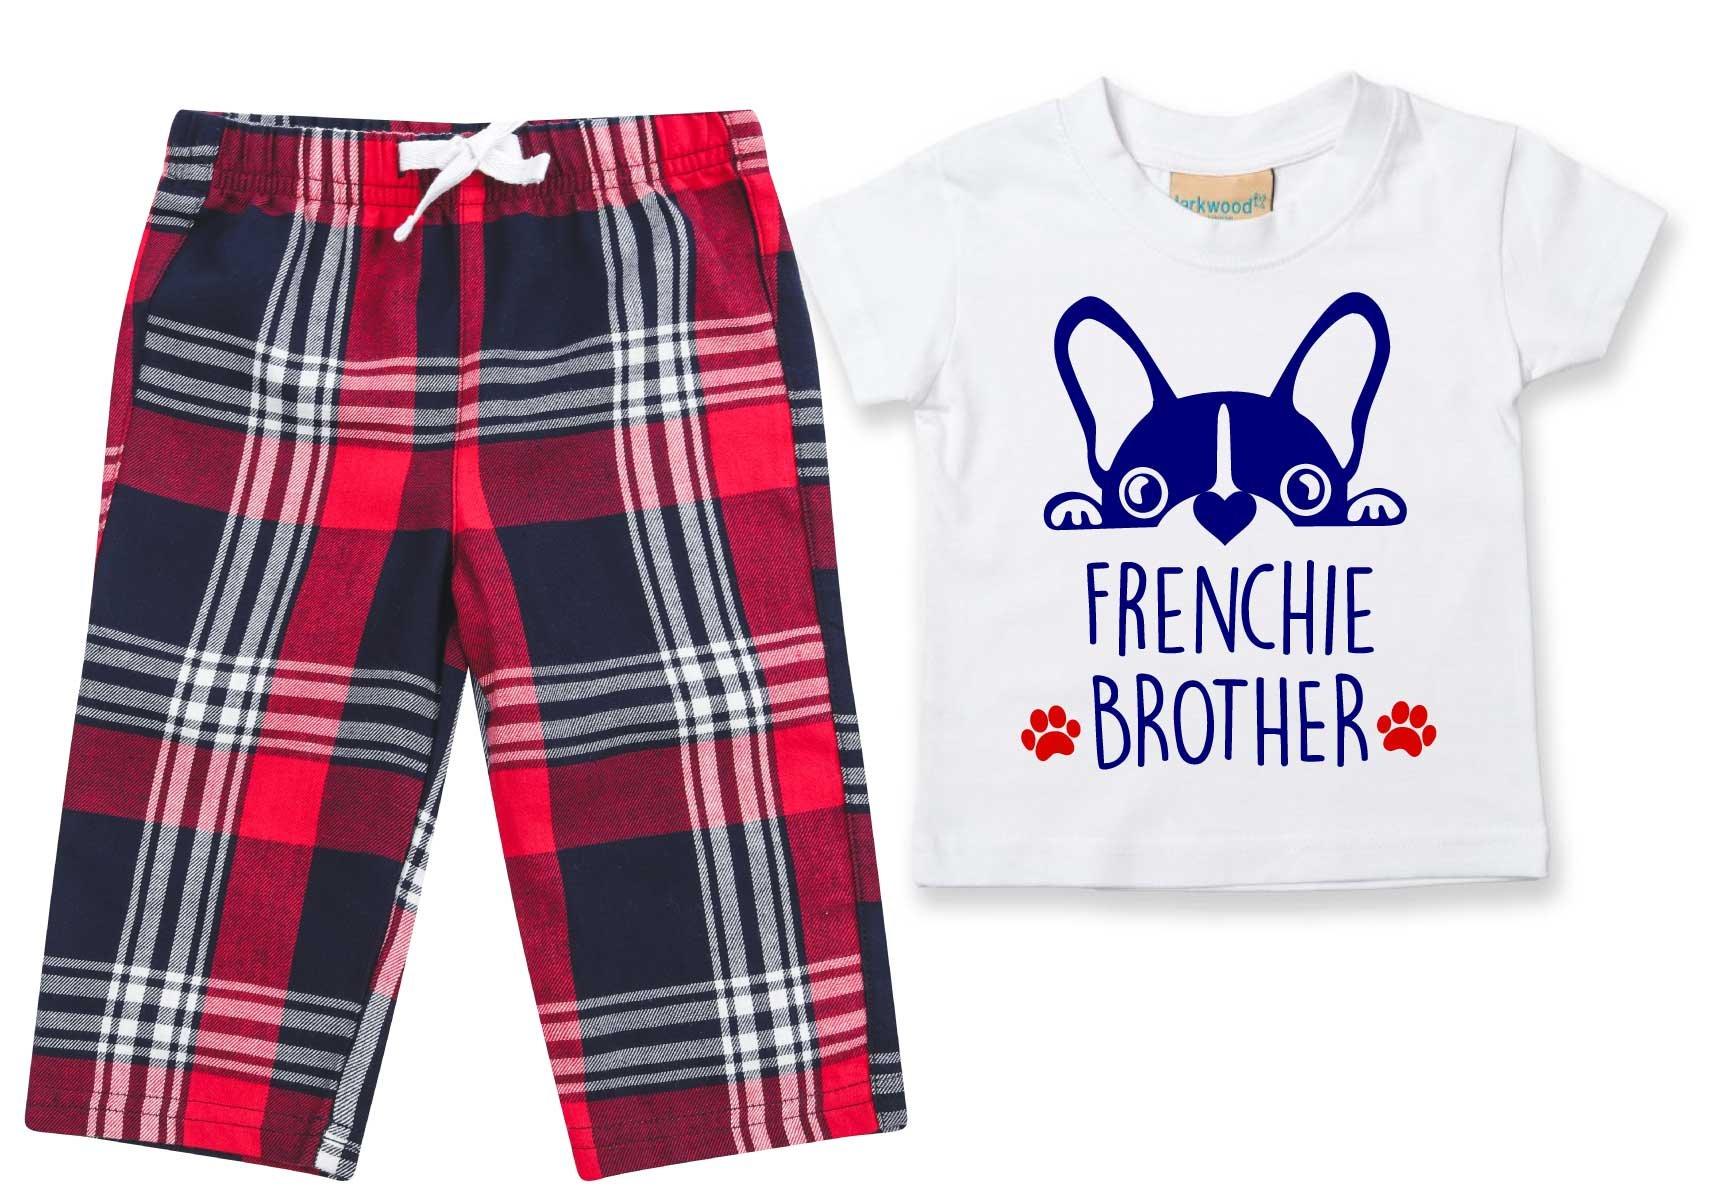 Пижамы Frenchie Brother, детские брюки в клетку, пижамный комплект с французским бульдогом 60 SECOND MAKEOVER, красный